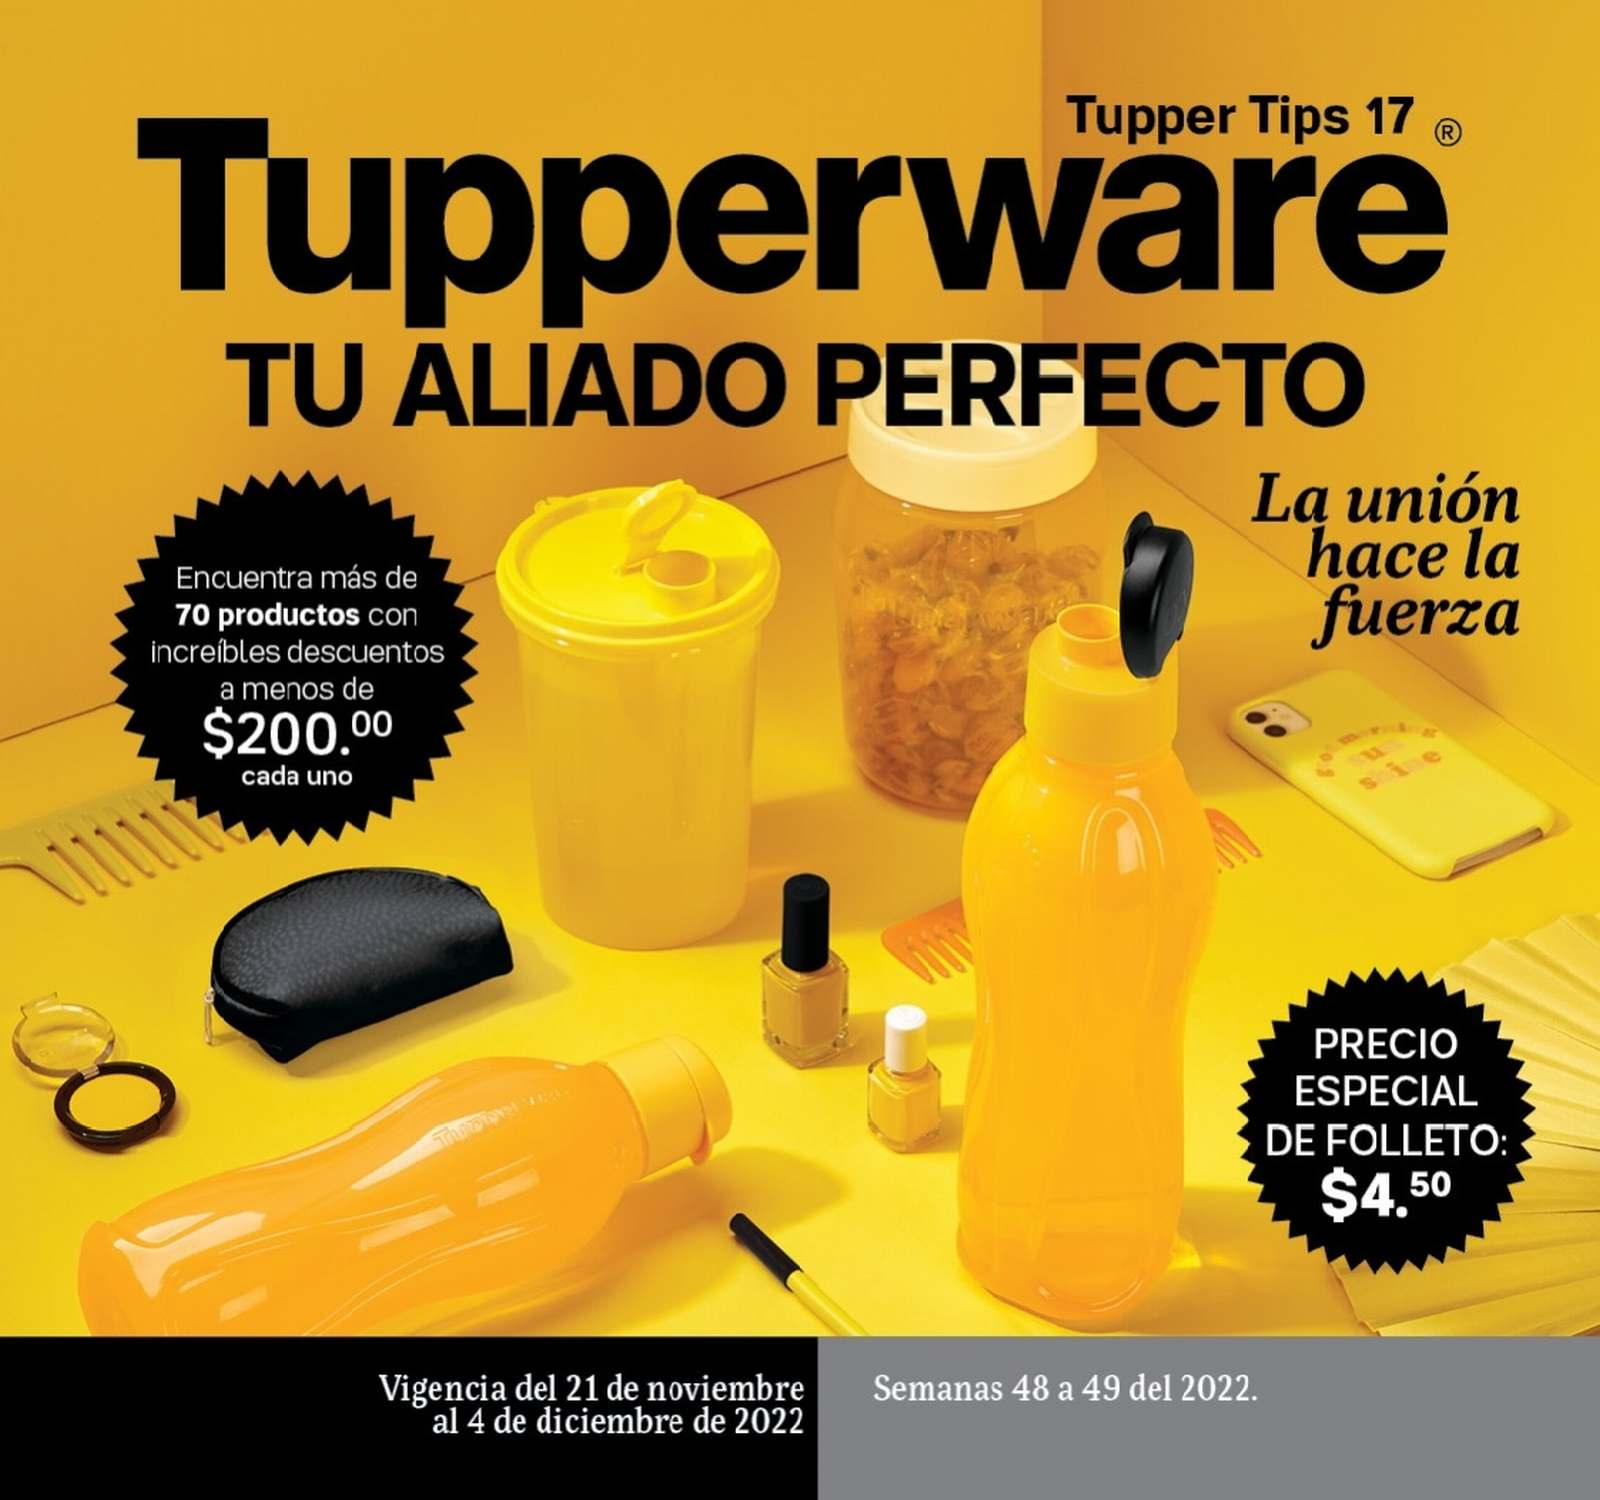 Catálogo Tupperware Tupper Tips 17 2022 México